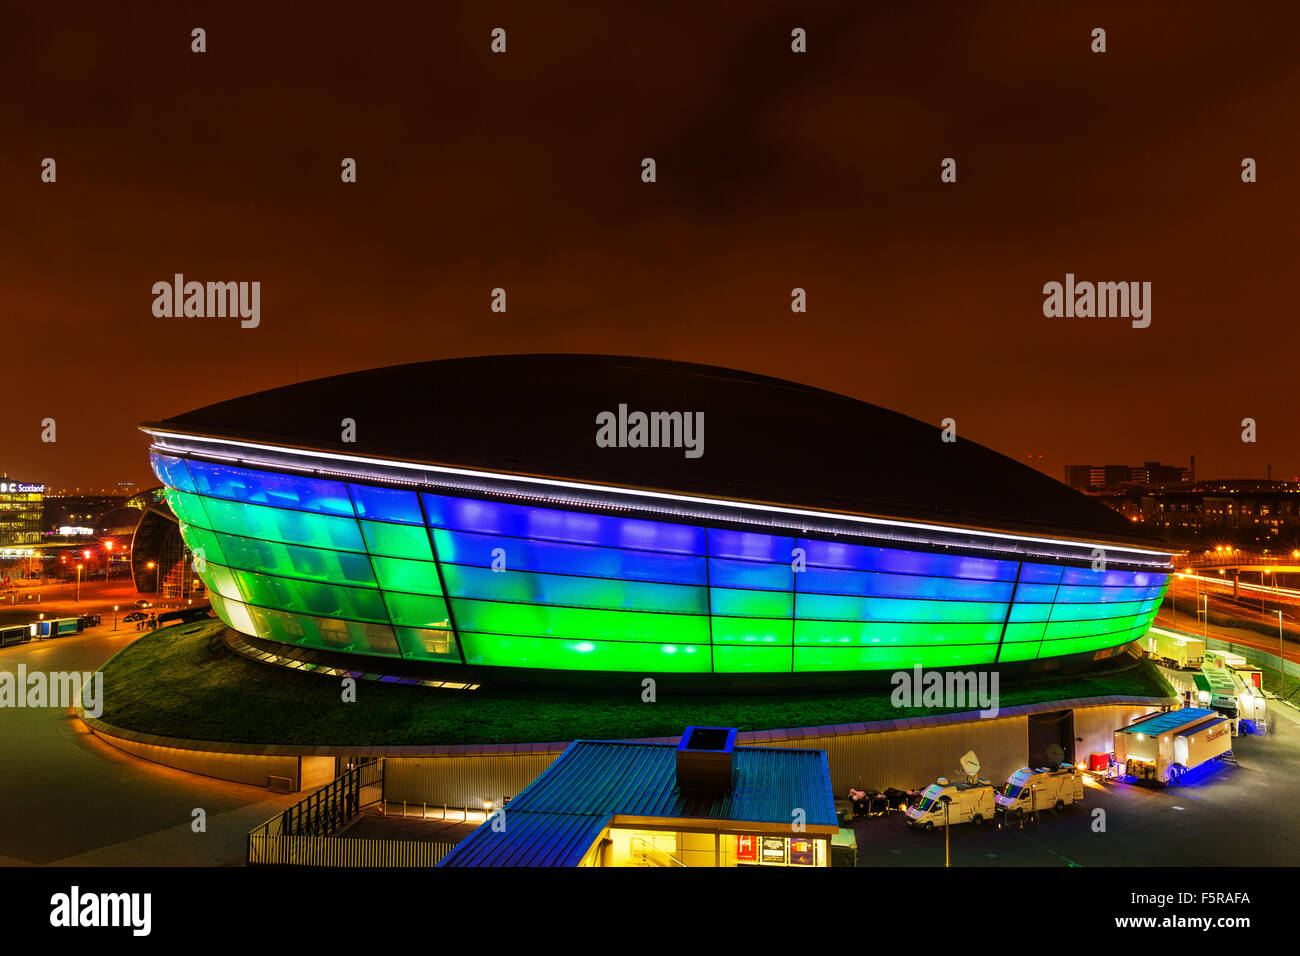 GLASGOW, SCHOTTLAND. 27. Oktober 2015: Der SSC Hydro Stadion beleuchtet in der Nacht am Ufer des River Clyde, Glasgow, Schottland Stockfoto